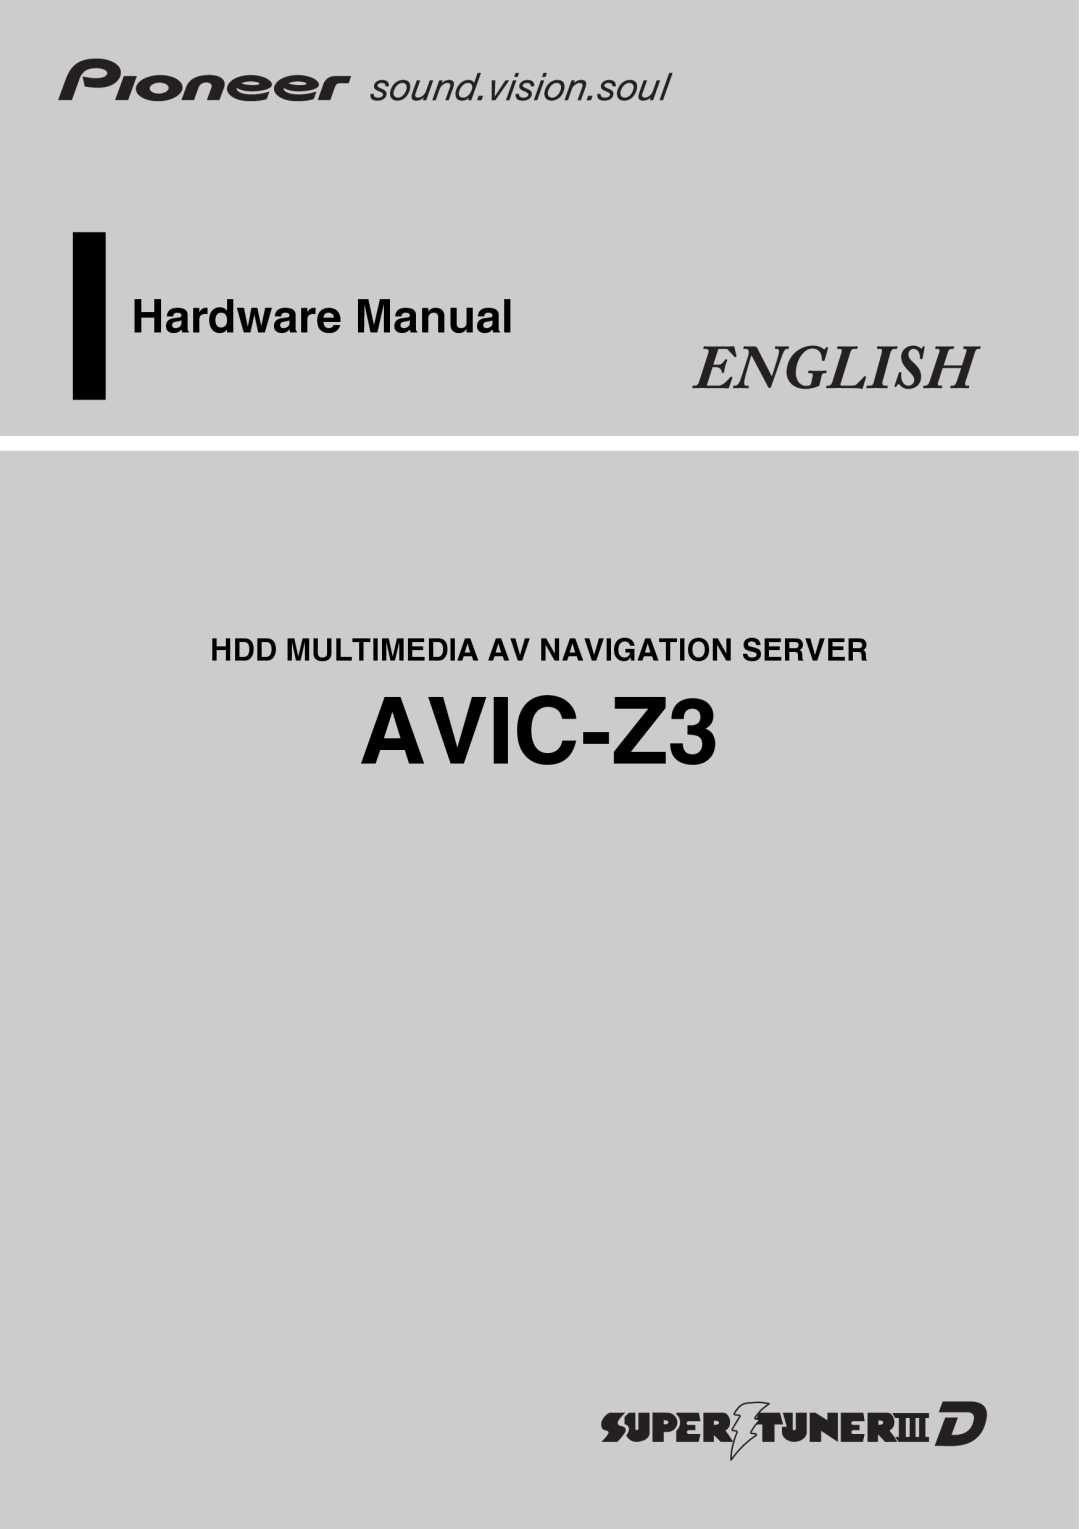 Pioneer AVIC-Z3 manual Hardware Manual, Hdd Multimedia Av Navigation Server 